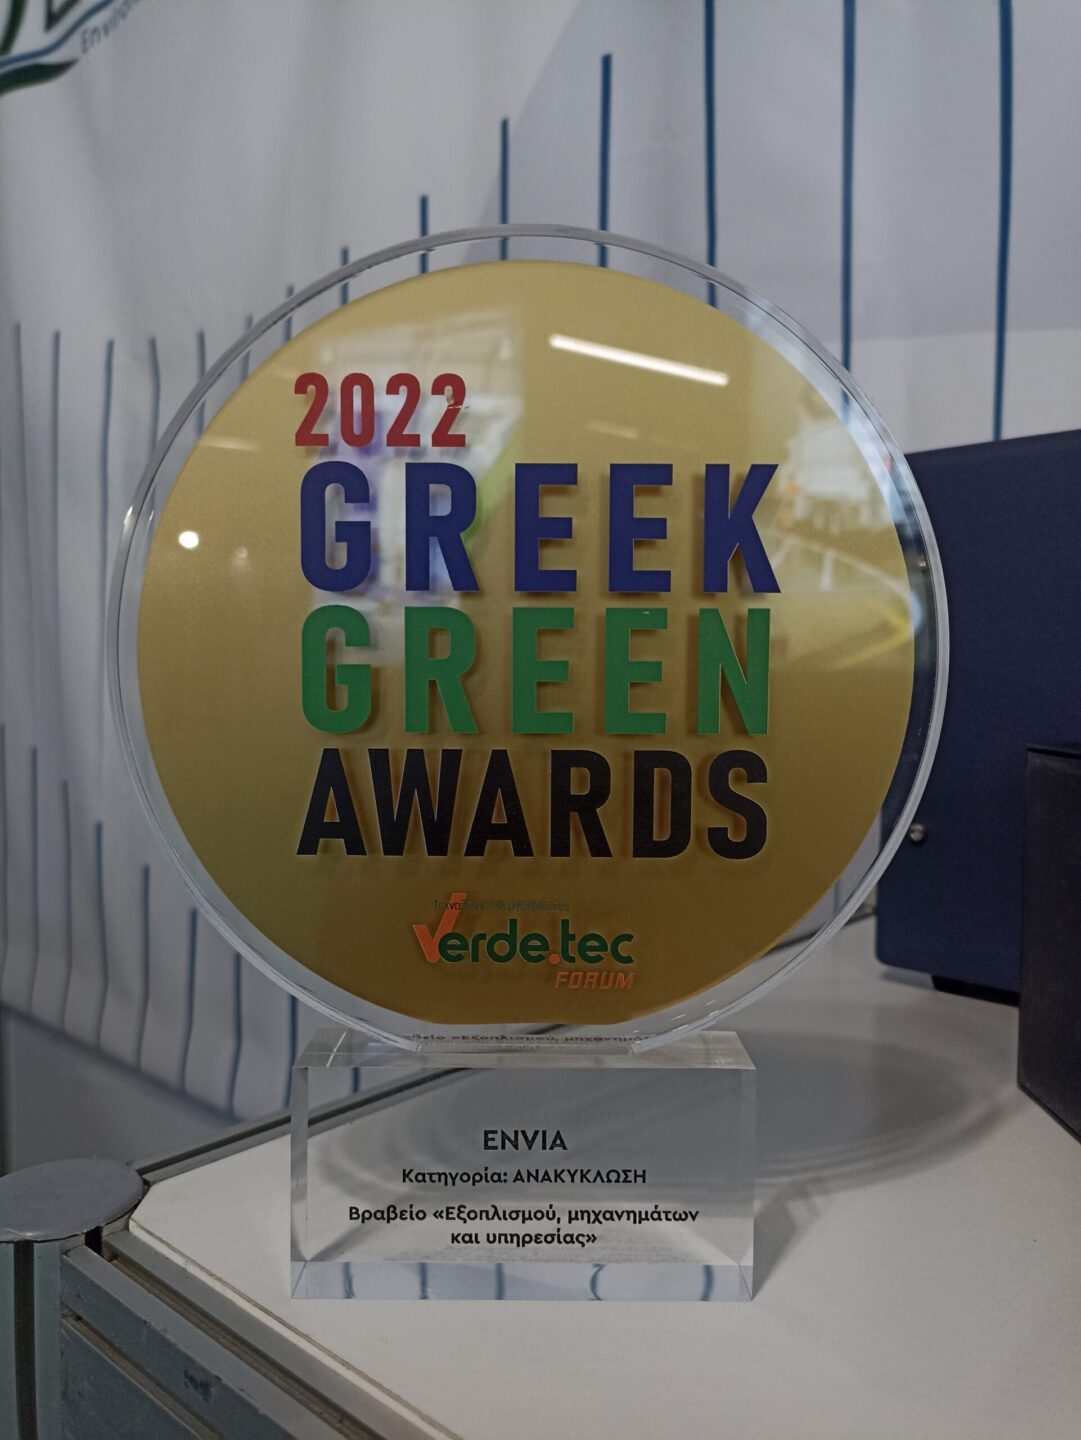 Βράβευση της Envia στα GREEK GREEN AWARDS 2022 στην κατηγορία ΑΝΑΚΥΚΛΩΣΗ: Βραβείο «Εξοπλισμού, μηχανημάτων και υπηρεσίας»